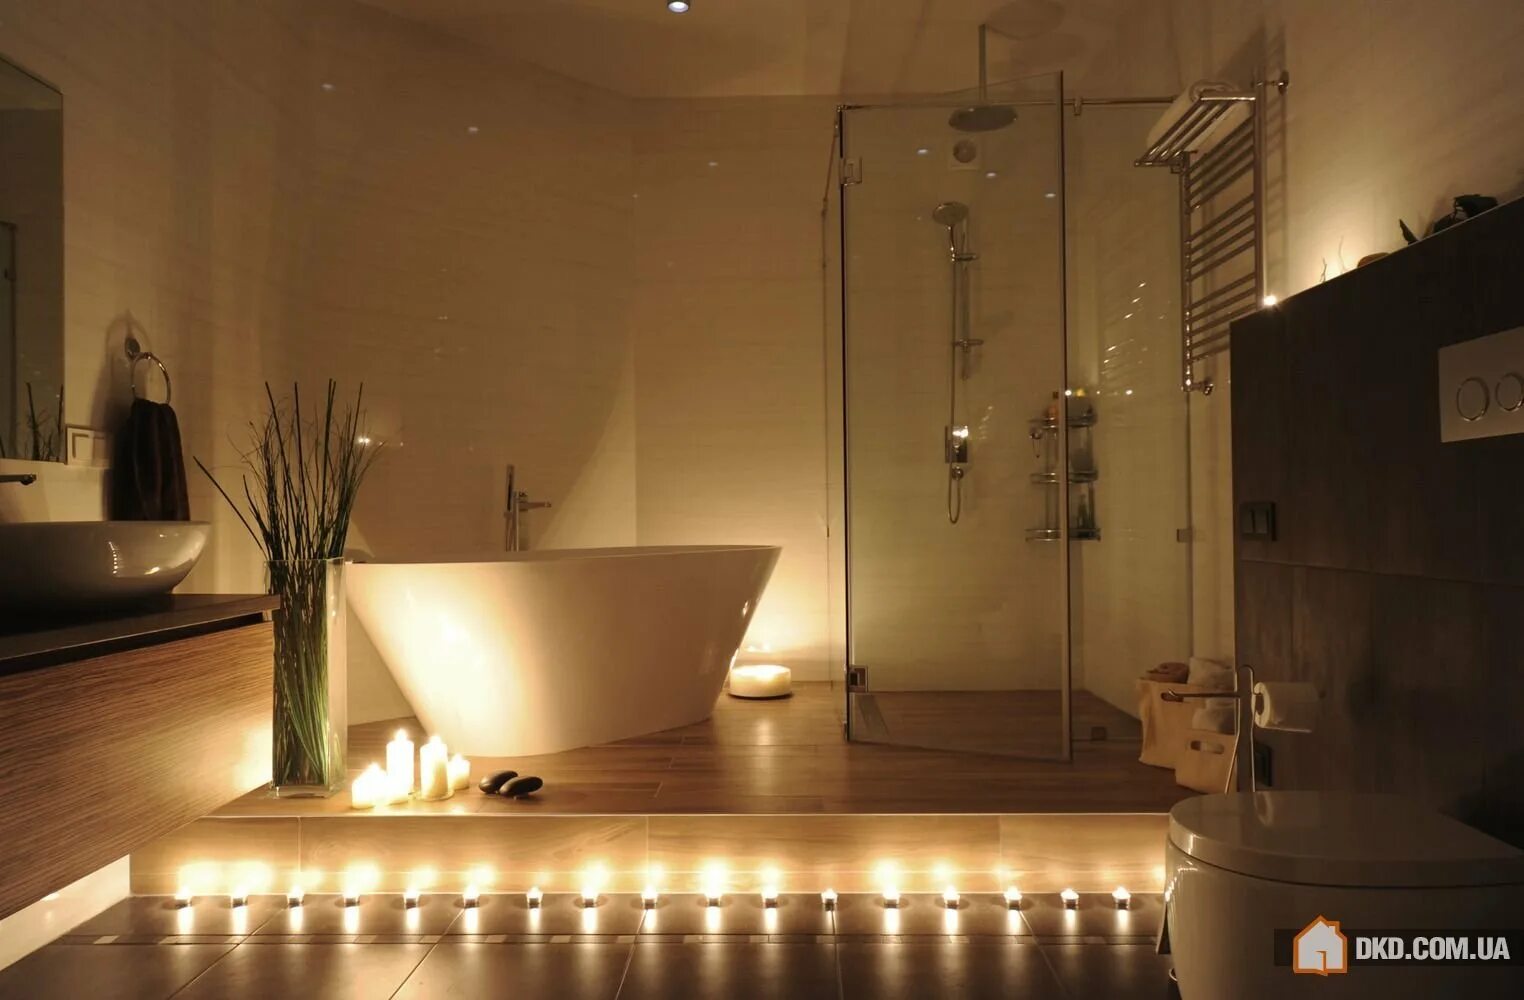 Подсветка теплый свет. Ванная комната с подсветкой. Освещение в ванной комнате. Ванна с подсветкой снизу. Необычная подсветка в ванной комнате.